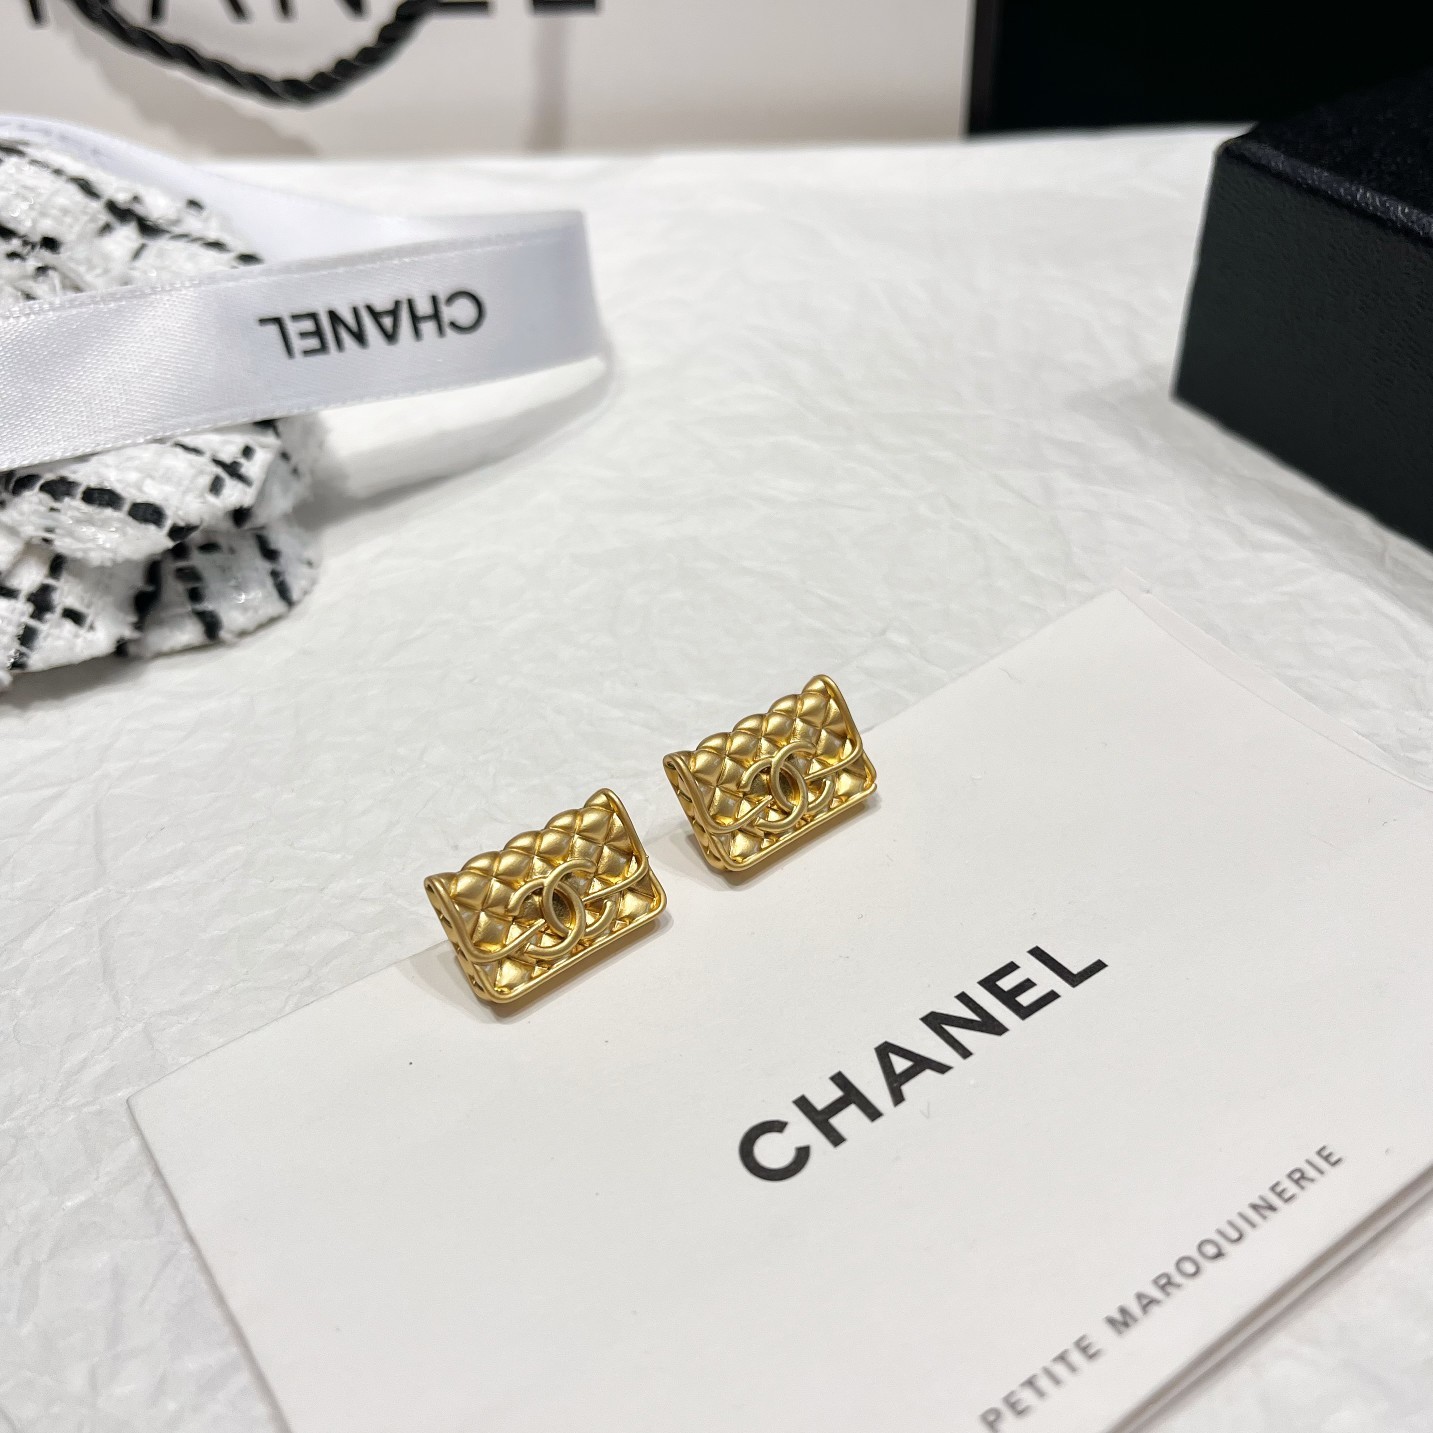 Chanel香奈儿中古字母耳钉小香家的款式真心无需多介绍每一款都超好看精致大方非常显气质.